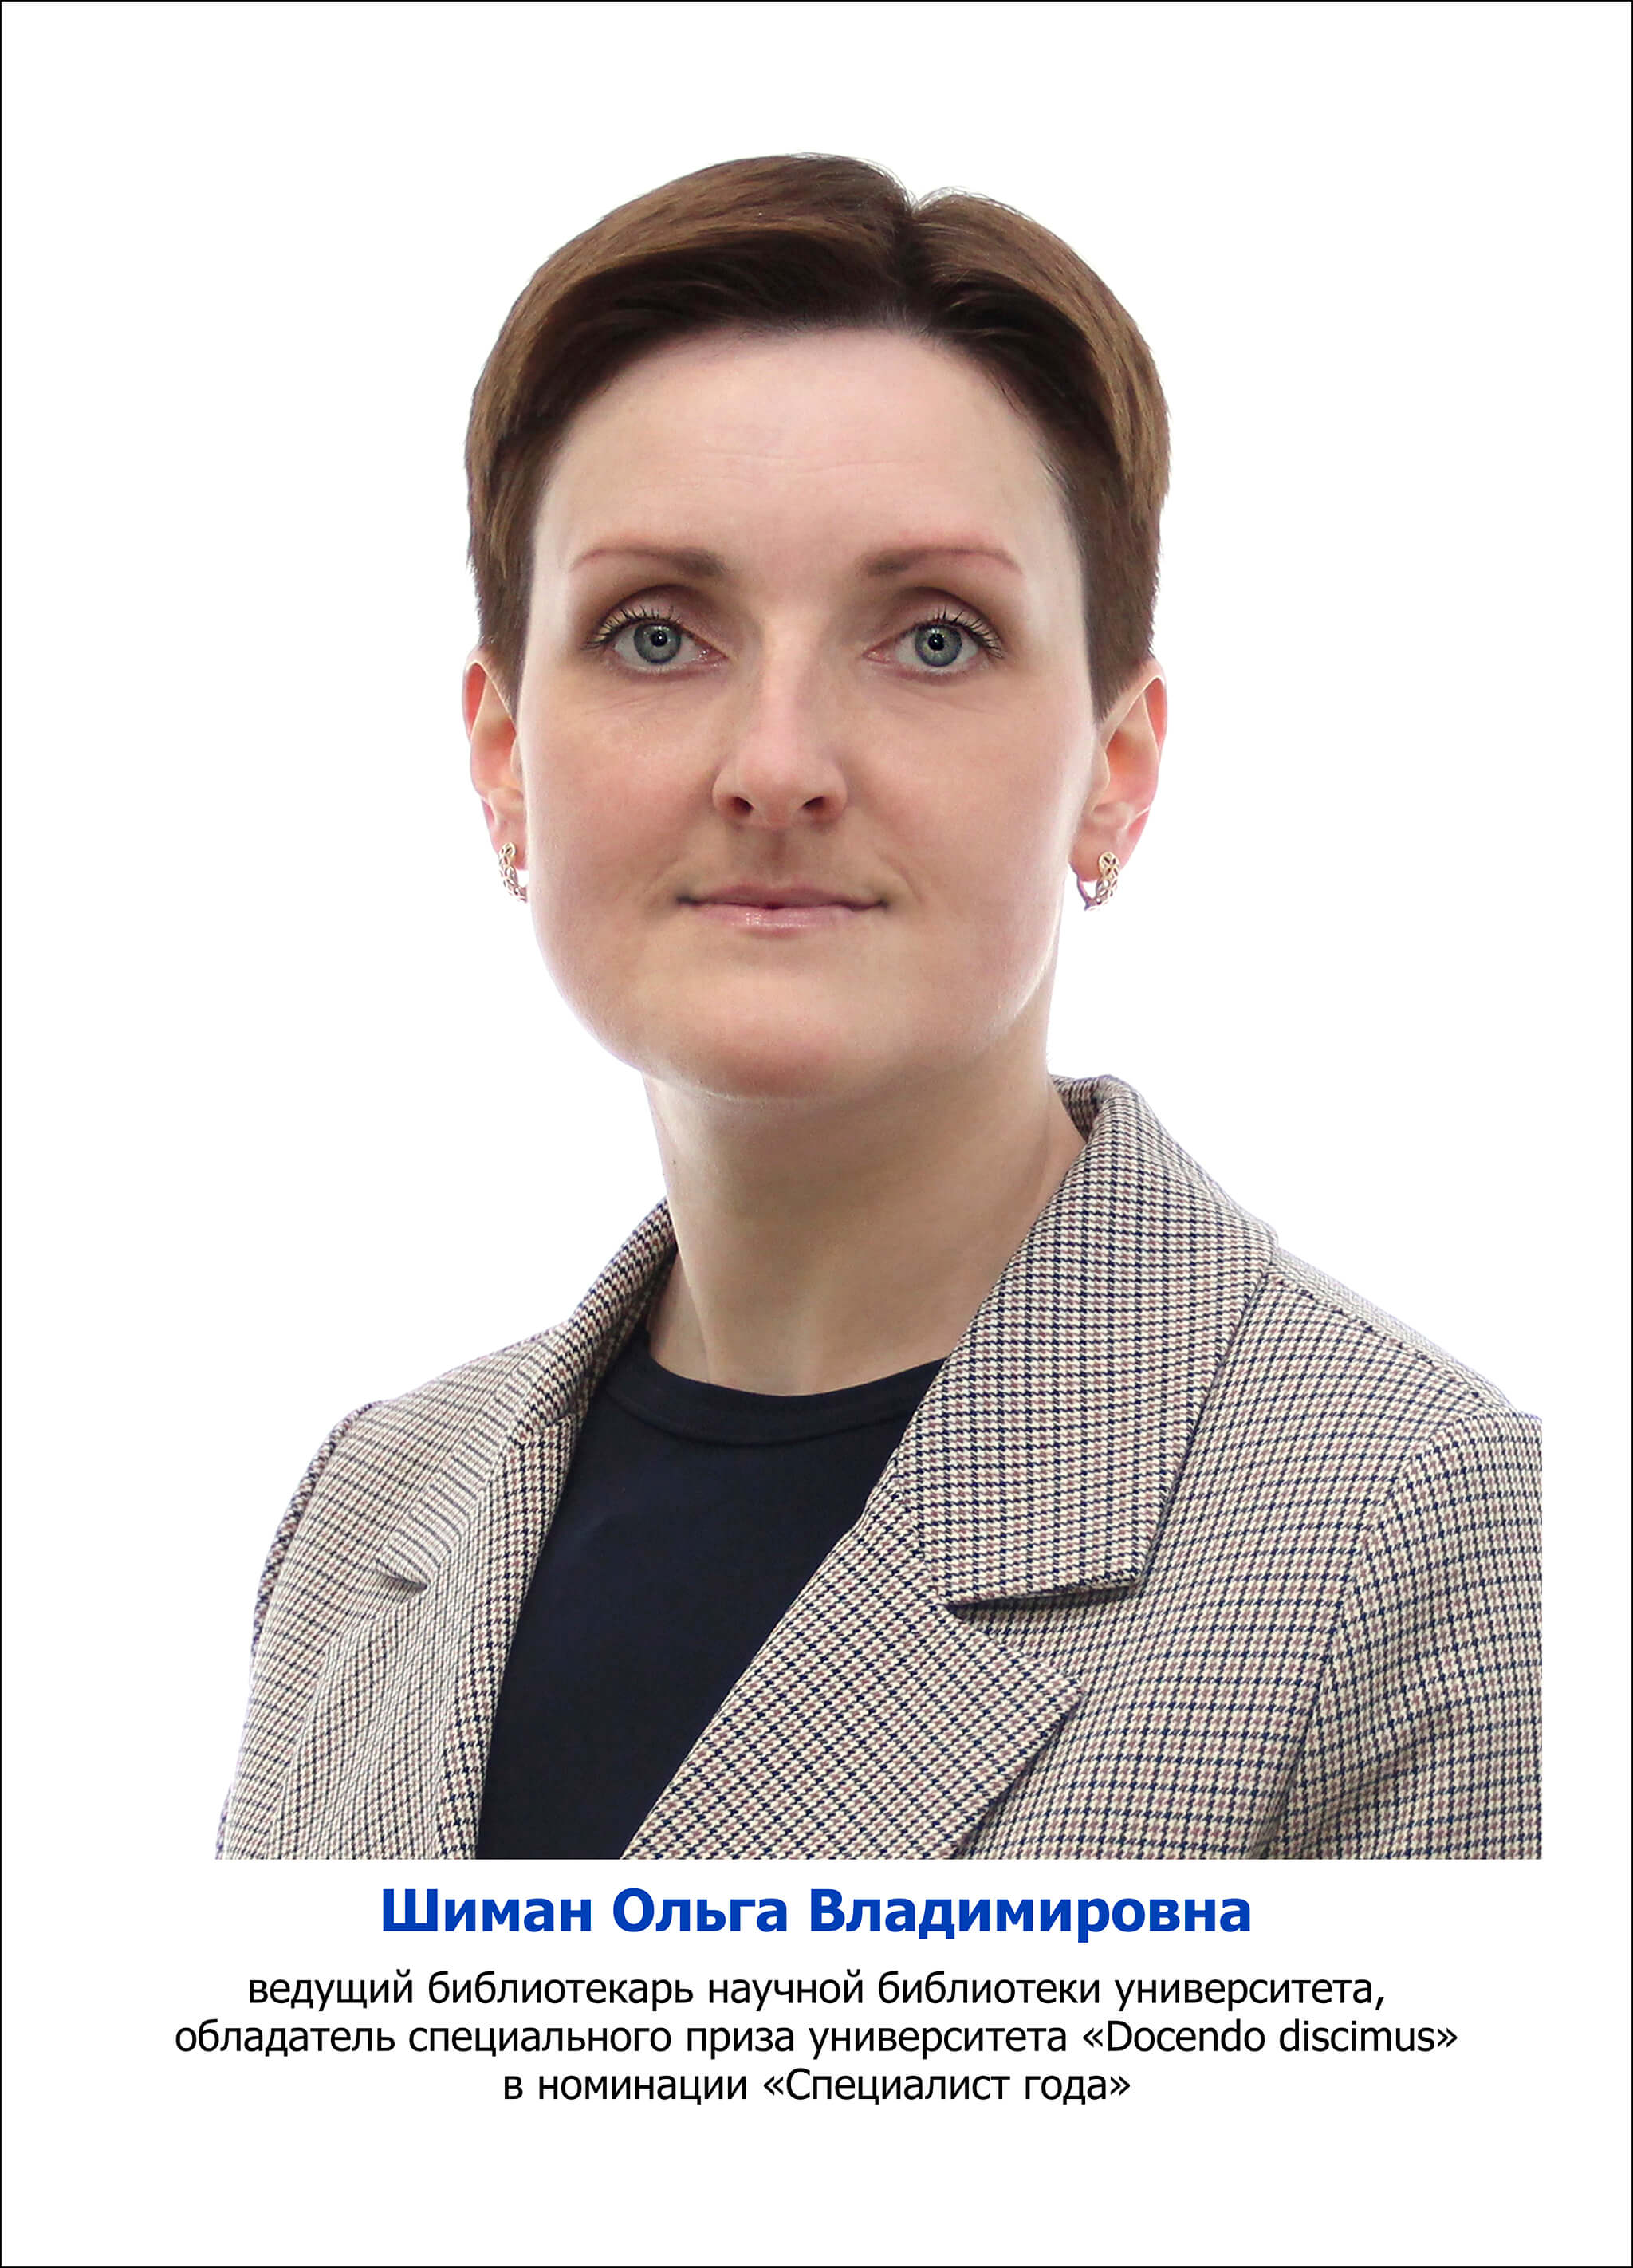 Шиман Ольга Владимировна